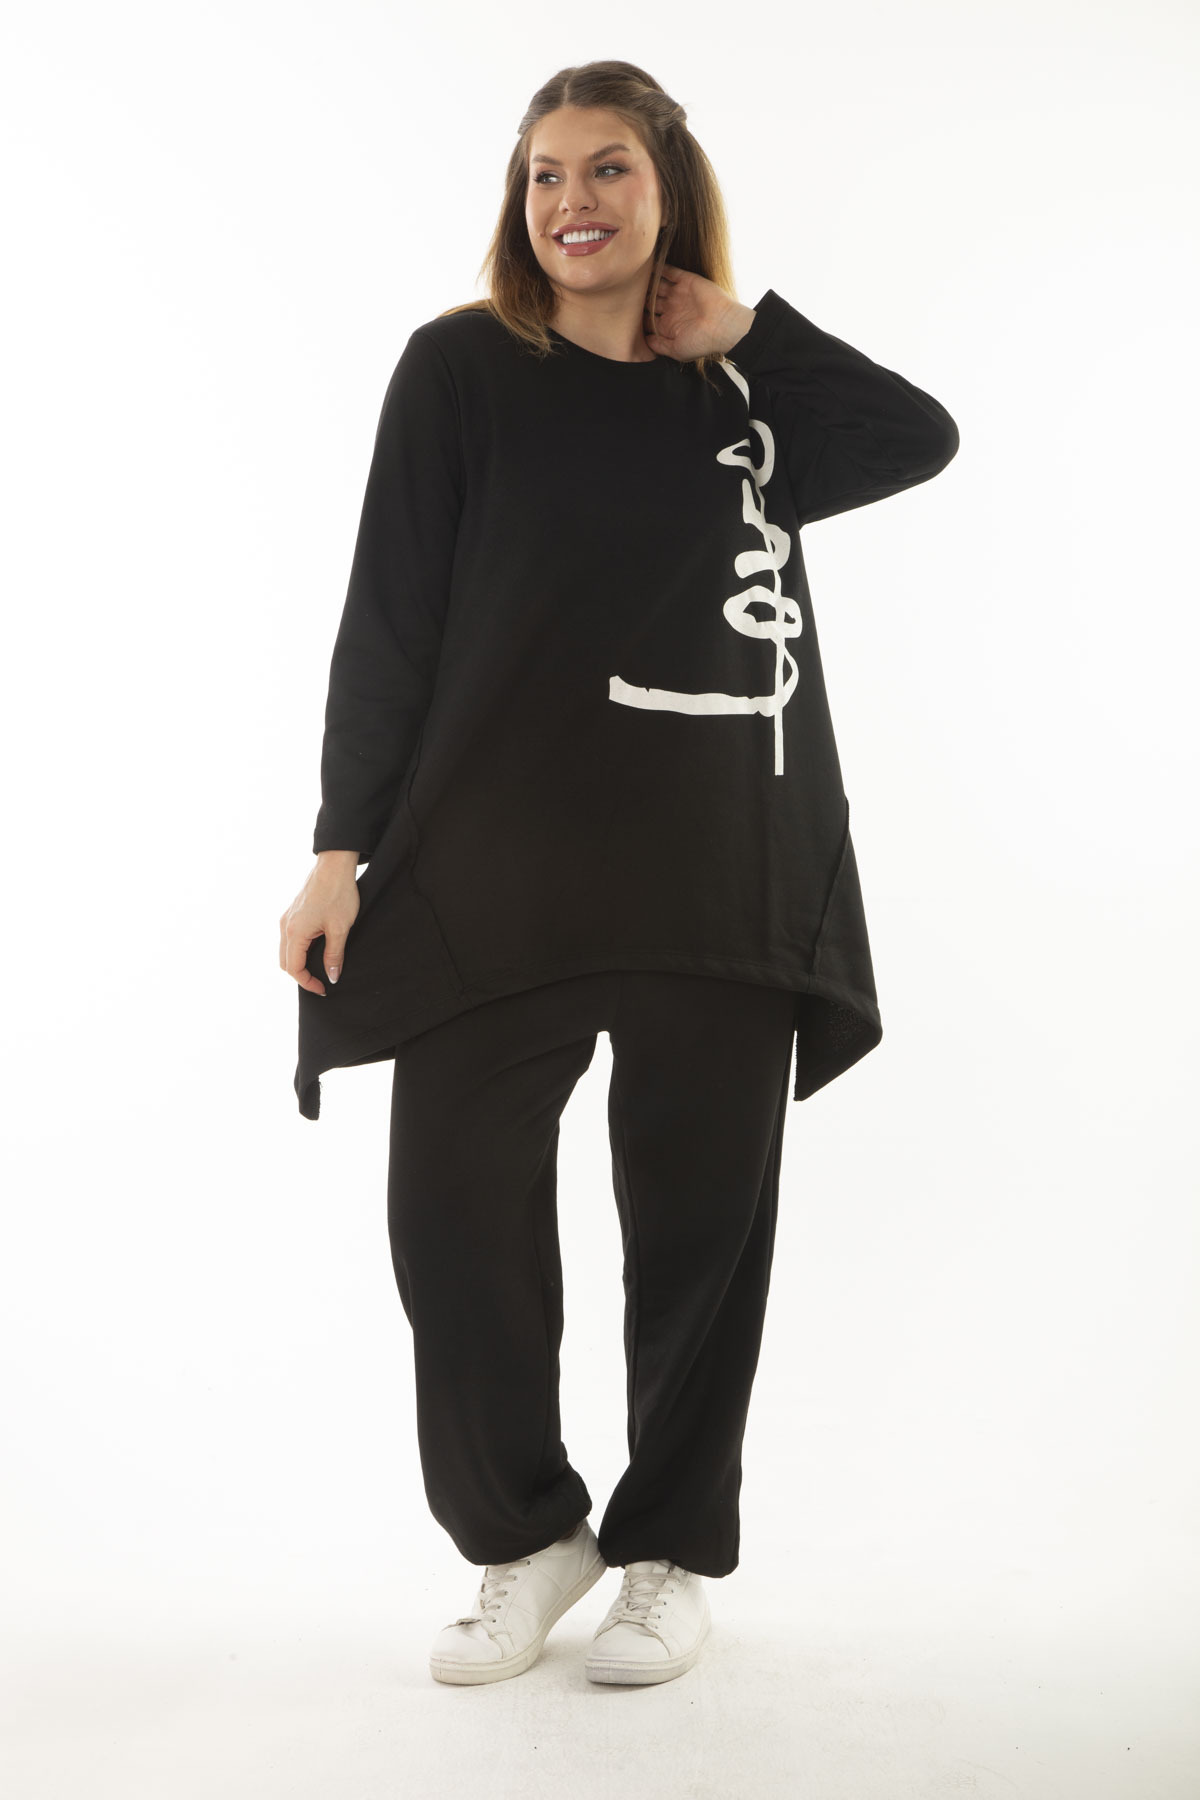 Levně Şans Women's Plus Size Black Cup And Print Detailed Sweatshirt Trousers Double Tracksuit Suit